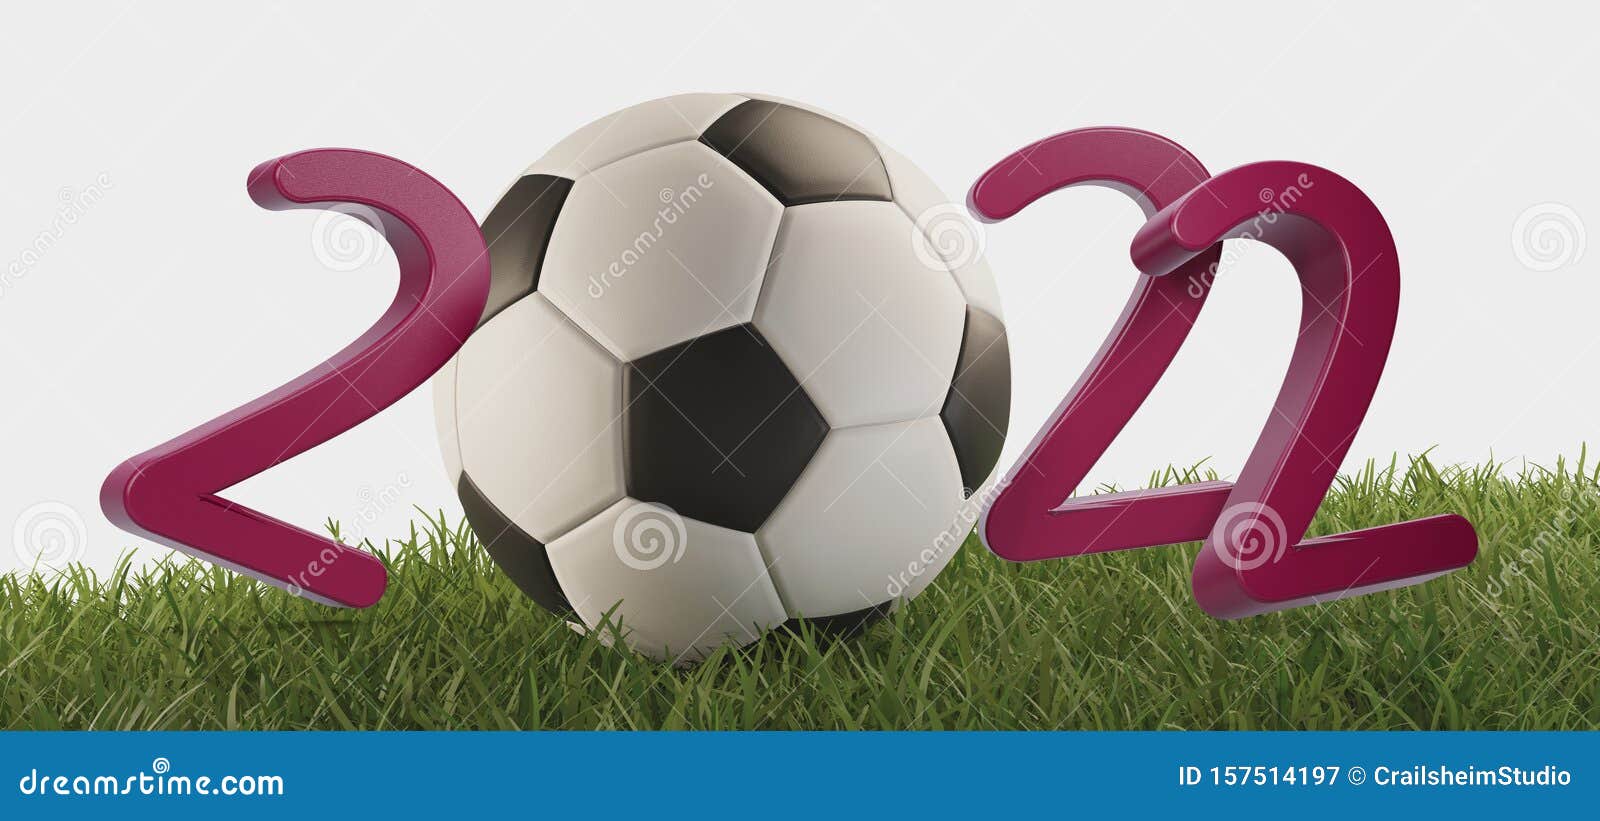 2022-soccer-ball-fine-letters-on-green-soccer-field-3d-illustration